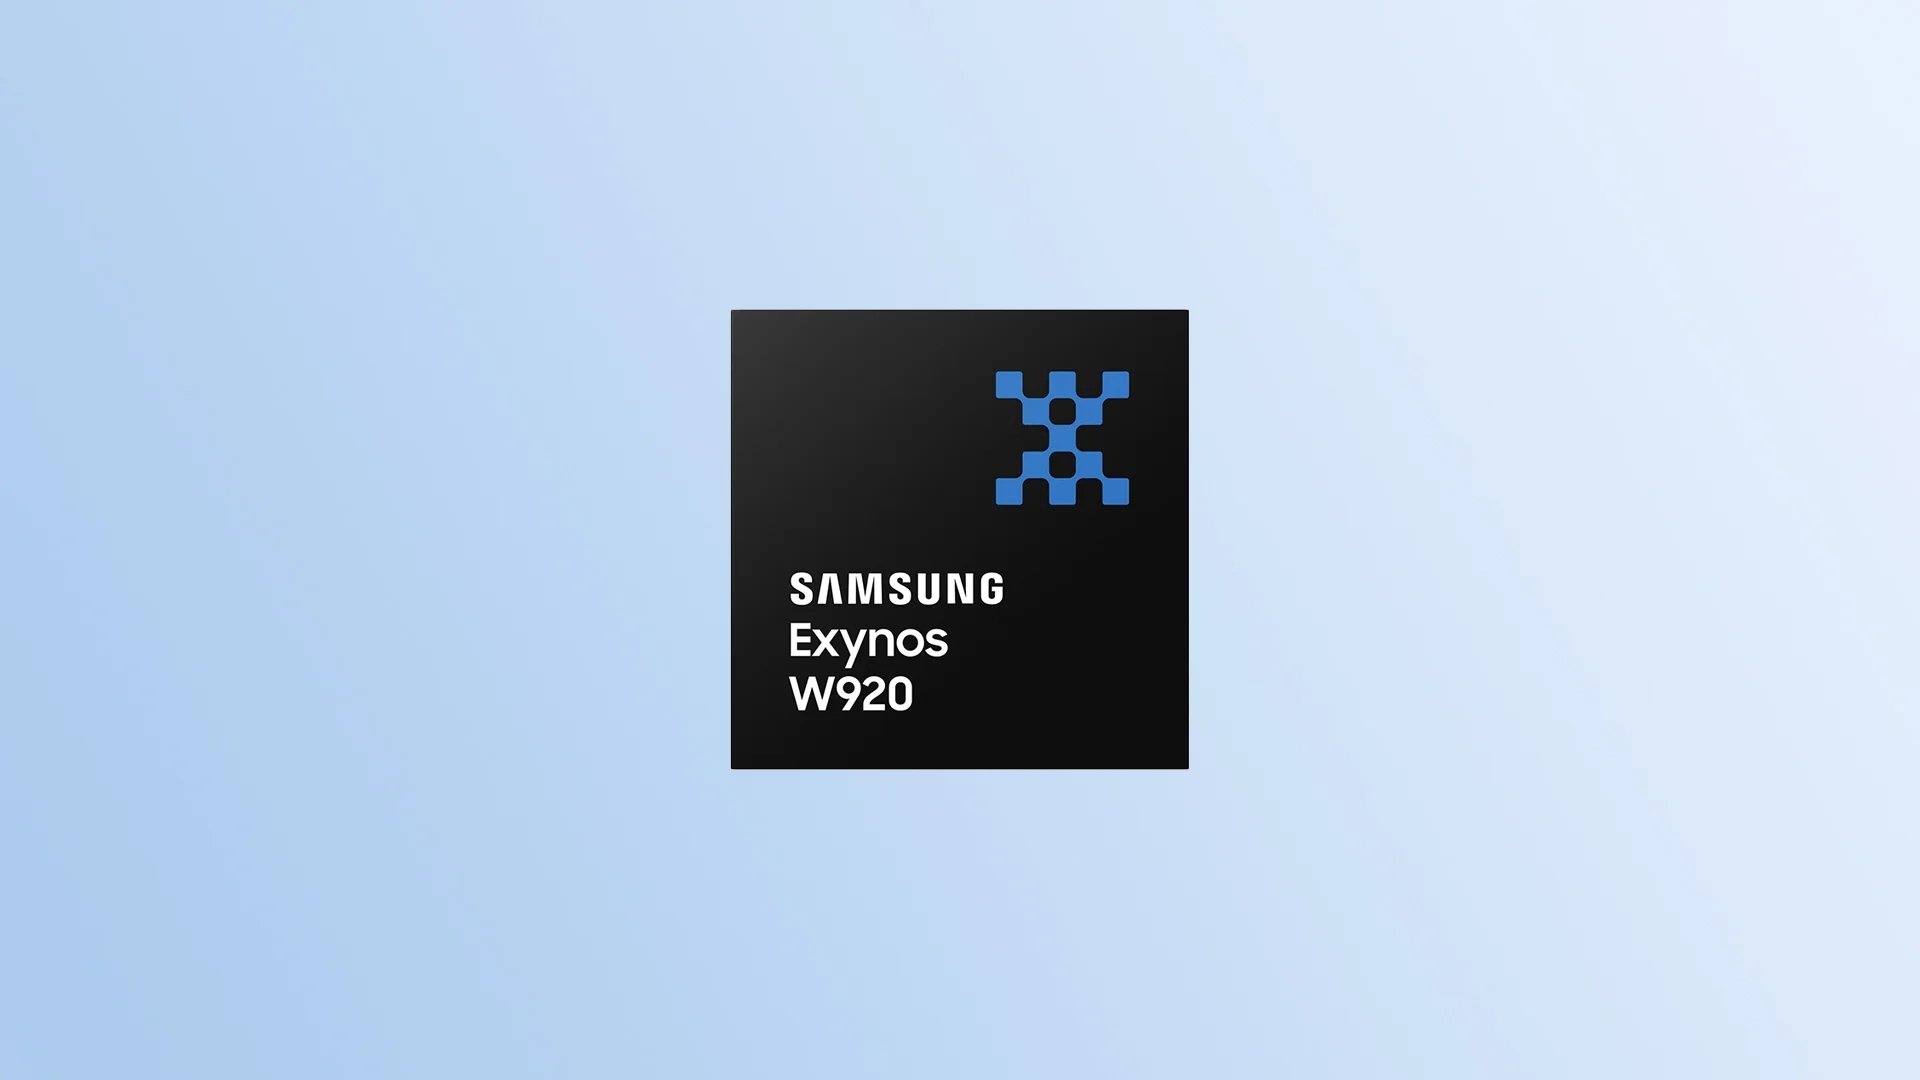 Samsung exynos W920